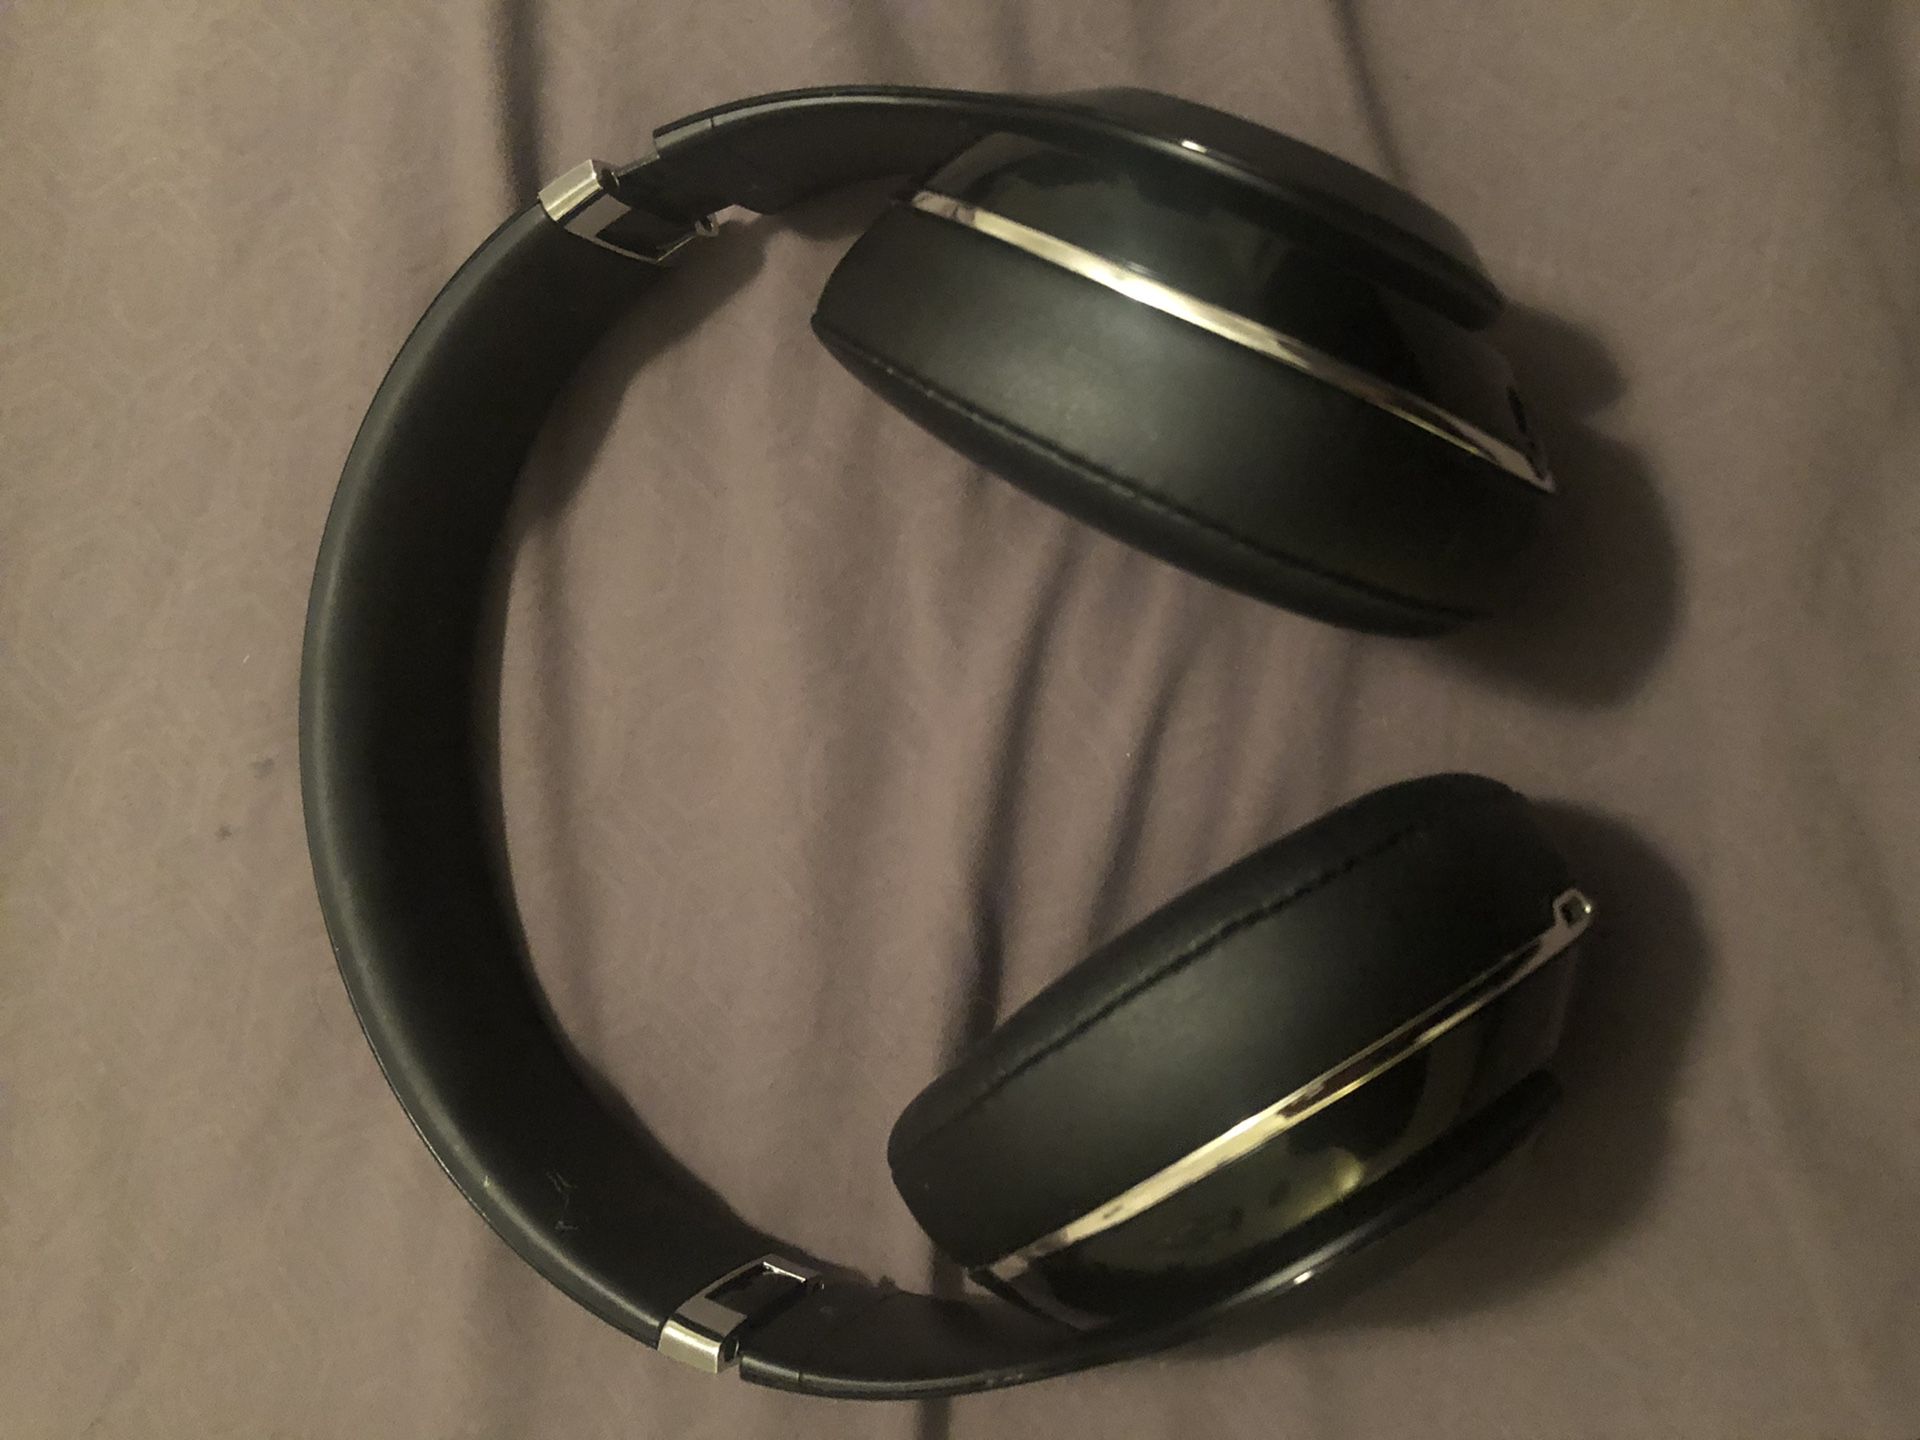 Beats Studio Wireless 2 headphones trade or sale